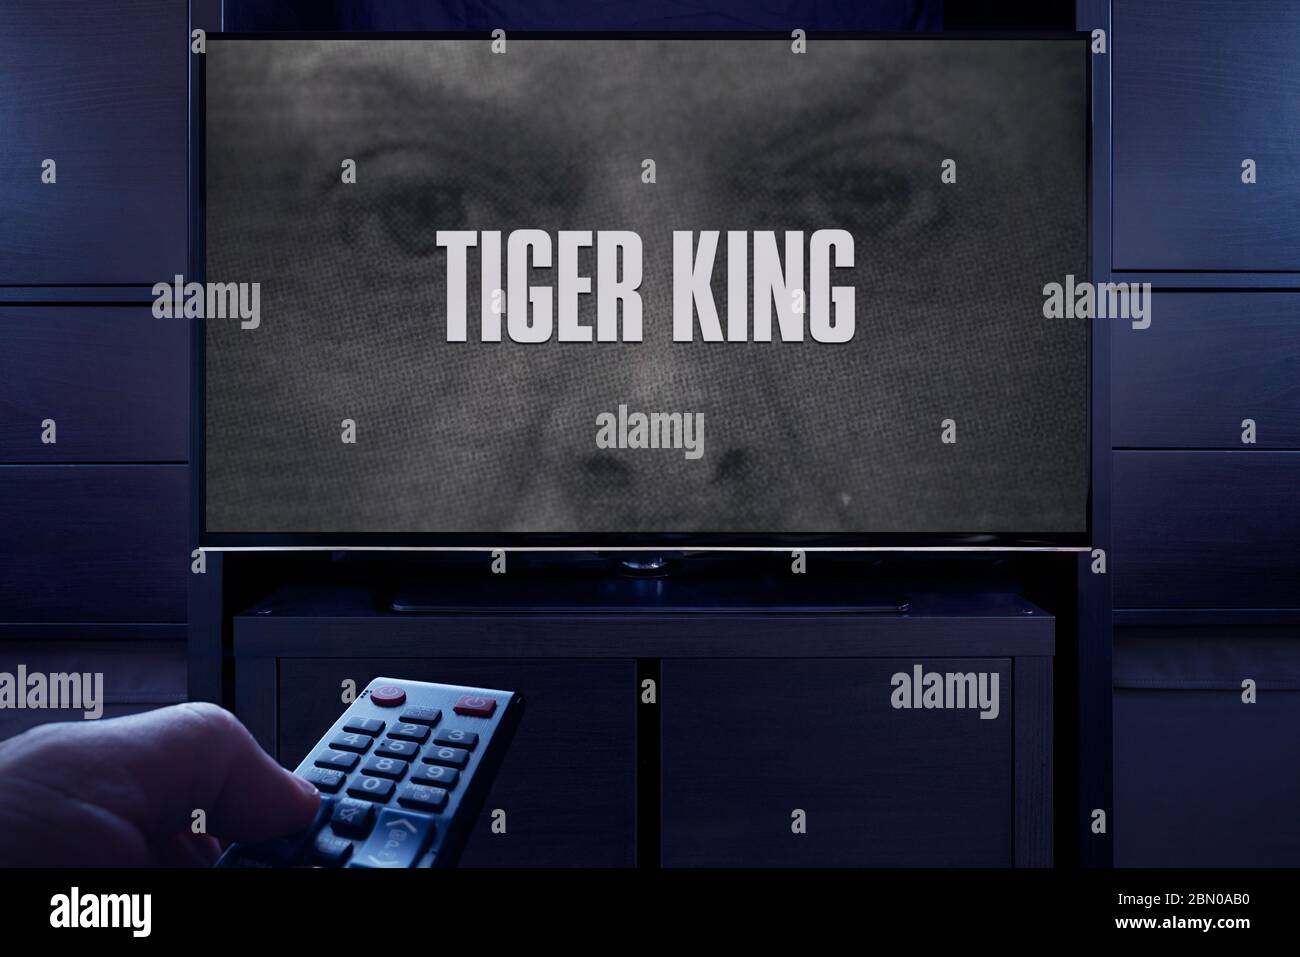 Un homme pointe une télécommande vers le téléviseur qui affiche l'écran principal du titre Tiger King (usage éditorial uniquement). Banque D'Images